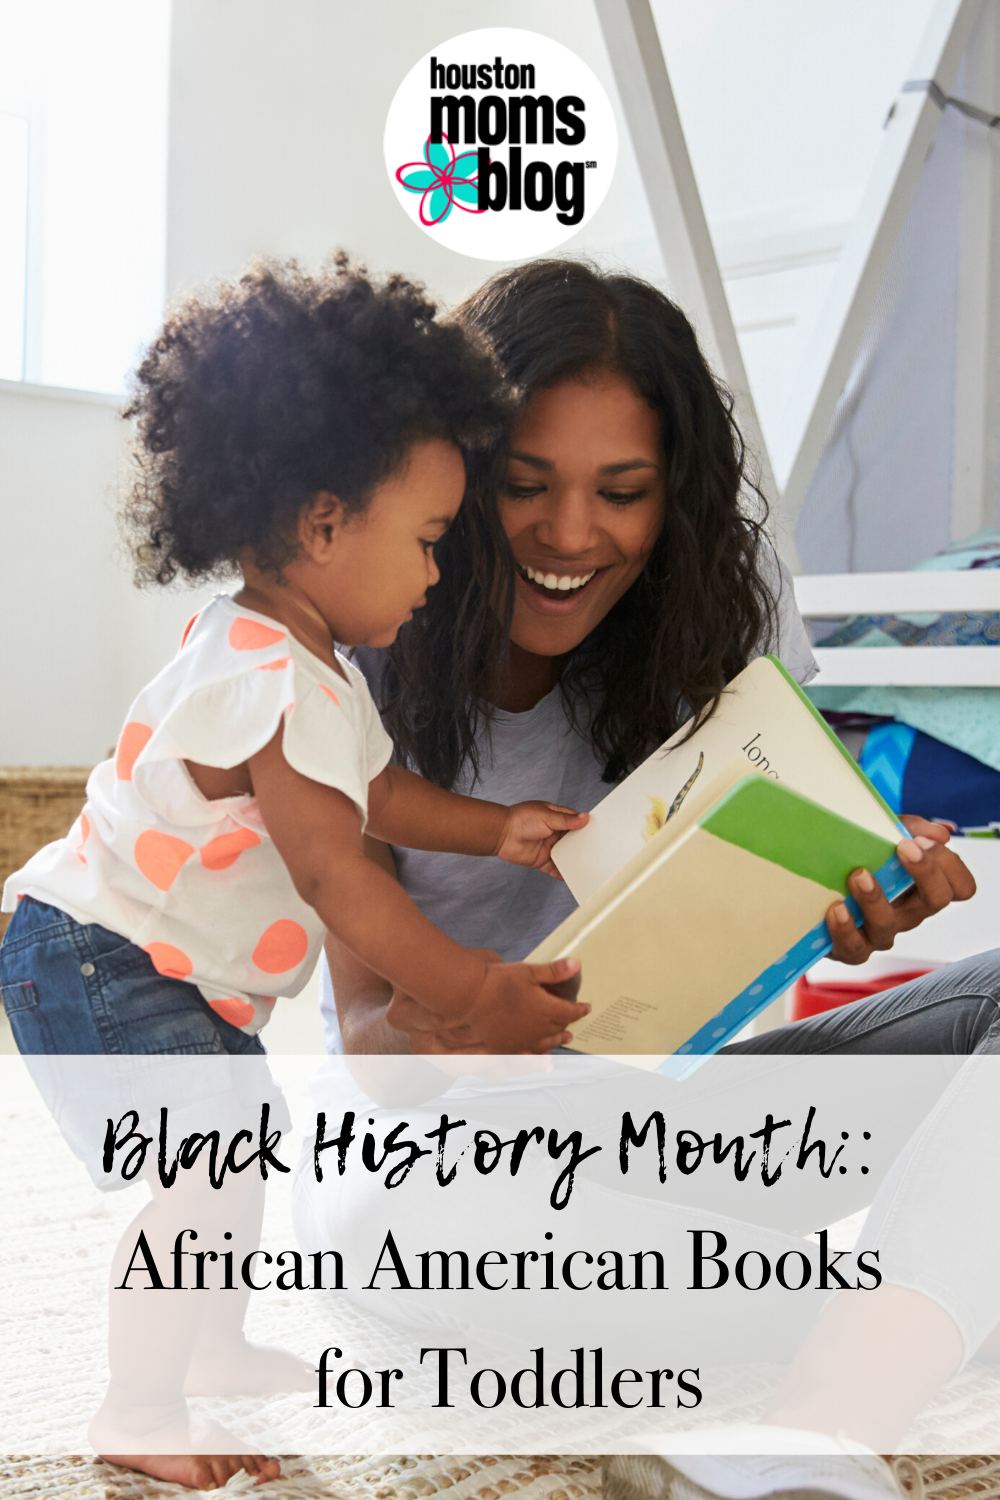 Houston Moms Blog "Black History Month:: African American Books for Toddlers" #houstonmomsblog #momsaroundhouston